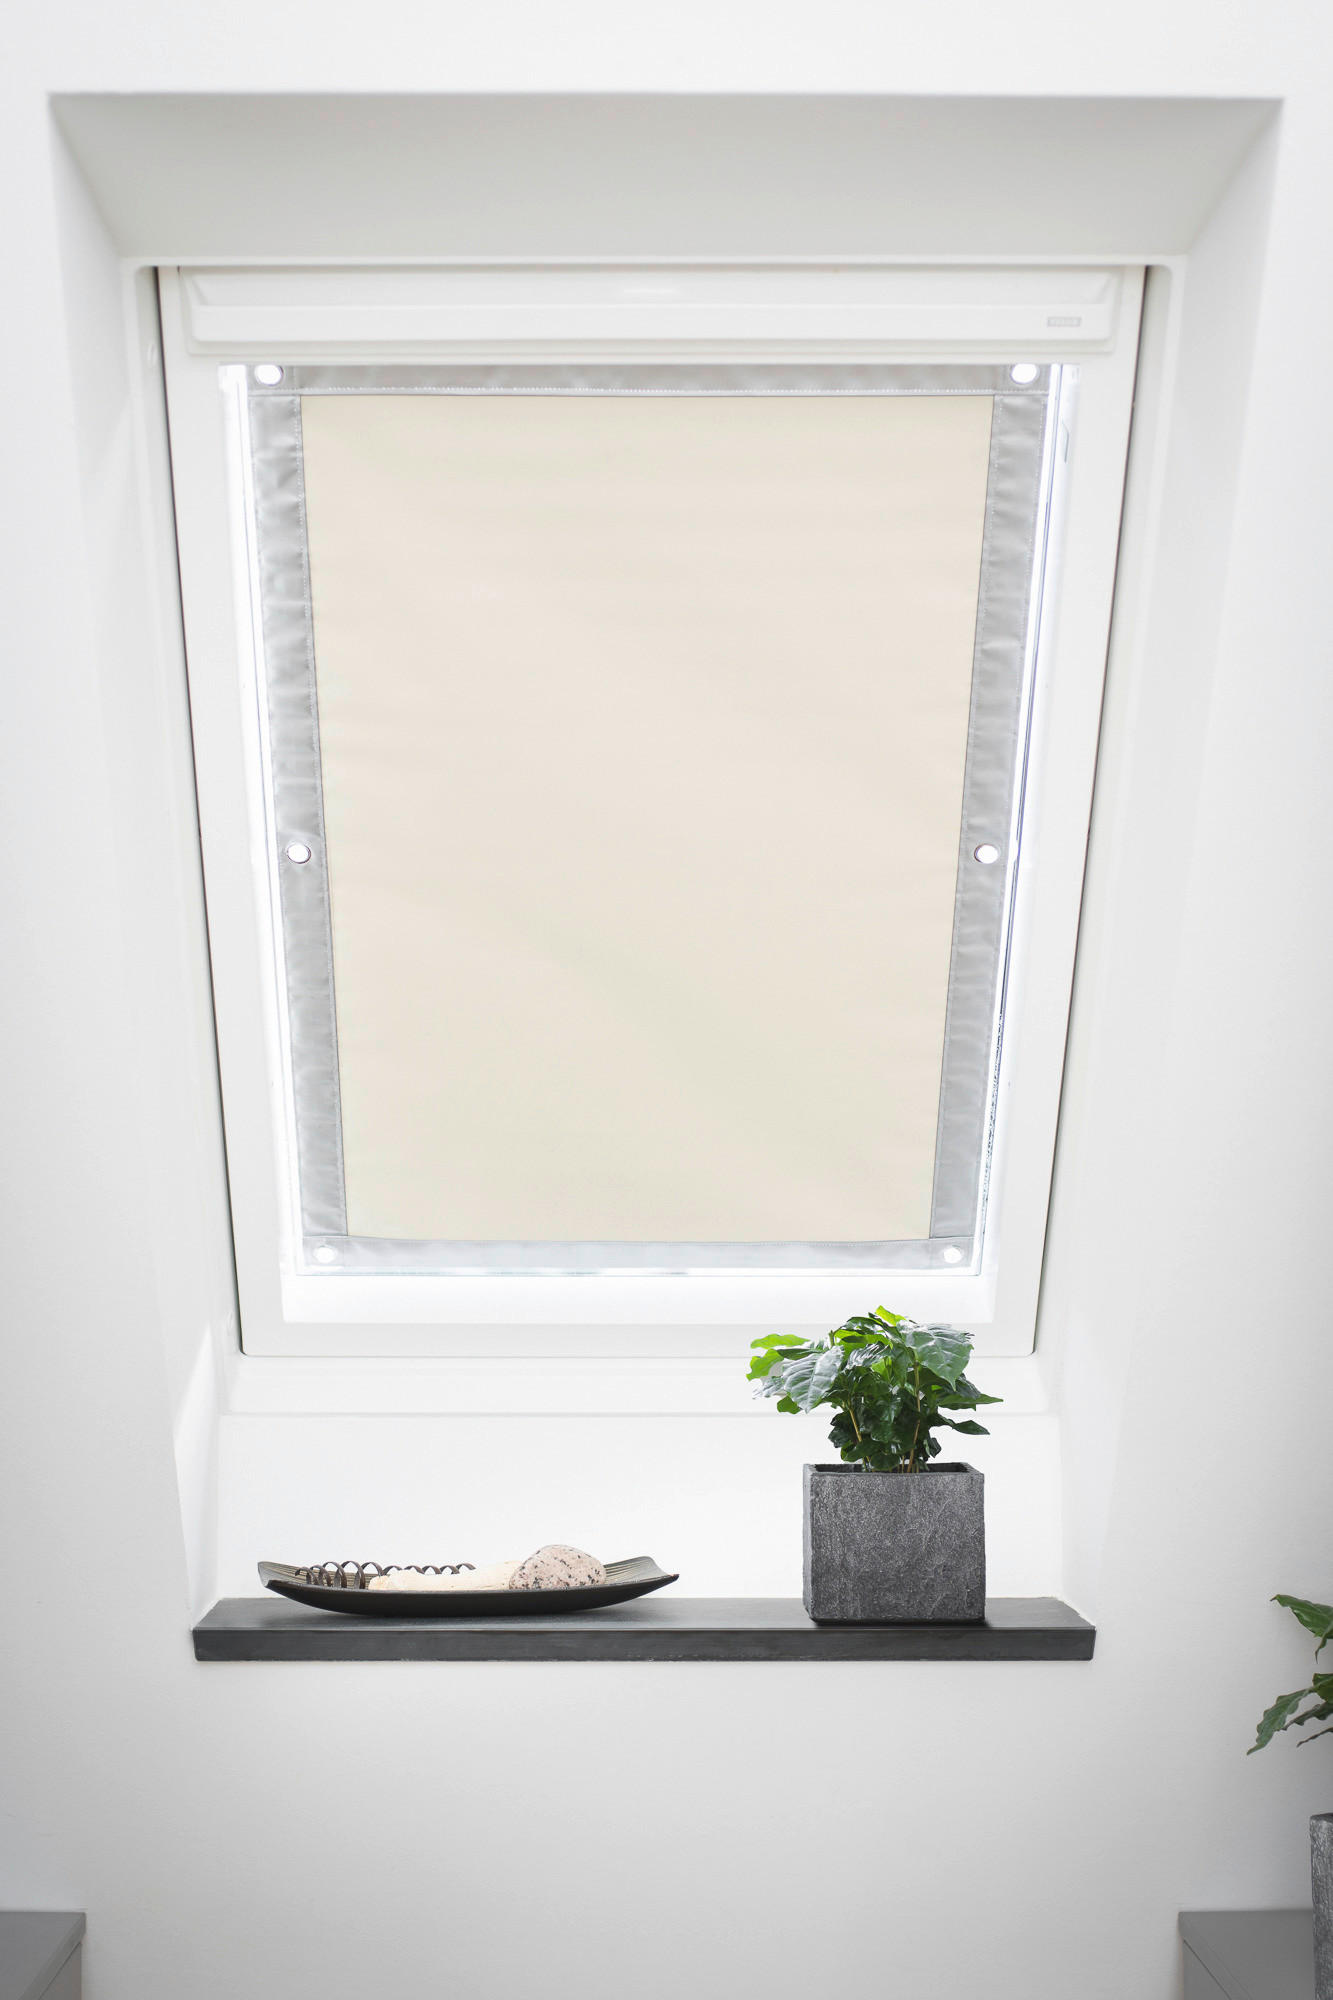 Dachfenster-Sonnenschutz VD beige B/L: ca. 94x91,5 cm